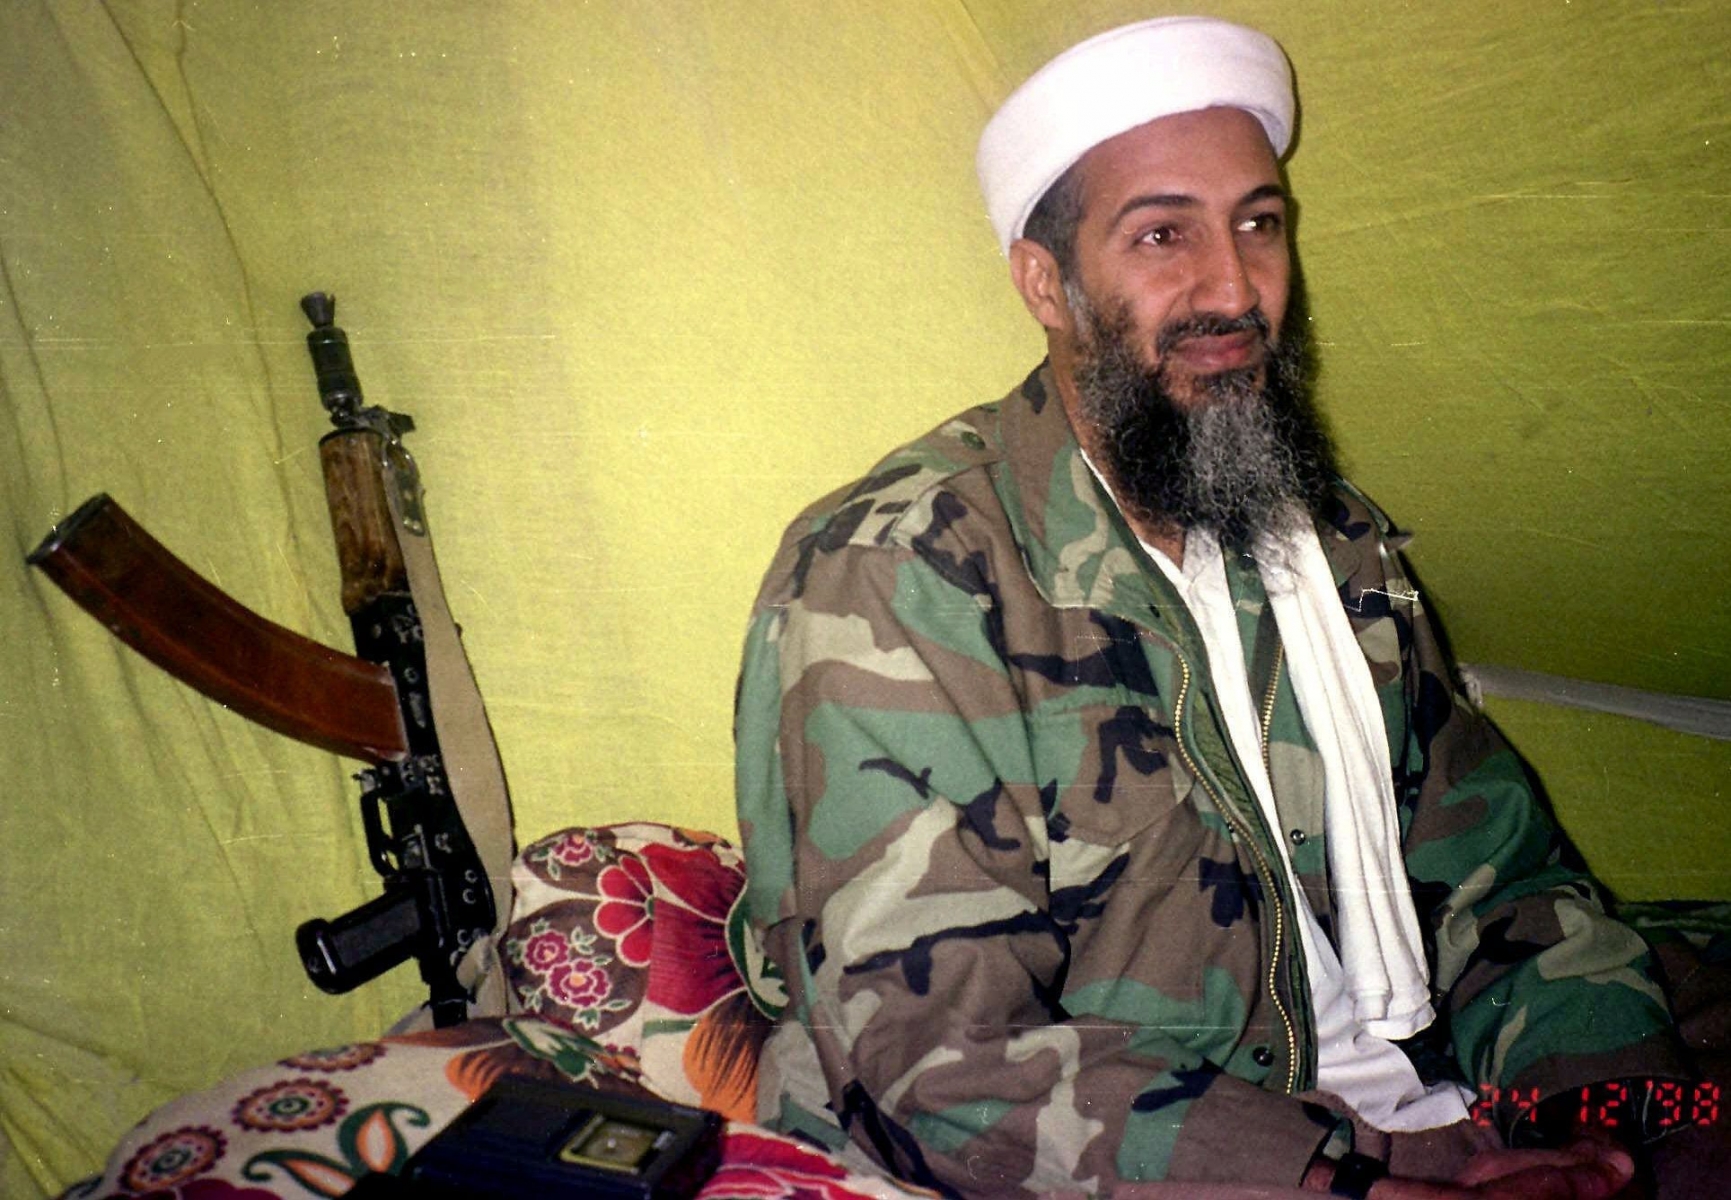 "J'espère que mes frères, soeurs, et tantes maternelles respecteront ma volonté et dépenseront tout l'argent que j'ai laissé au Soudan pour le djihad", a écrit Oussama Ben Laden.